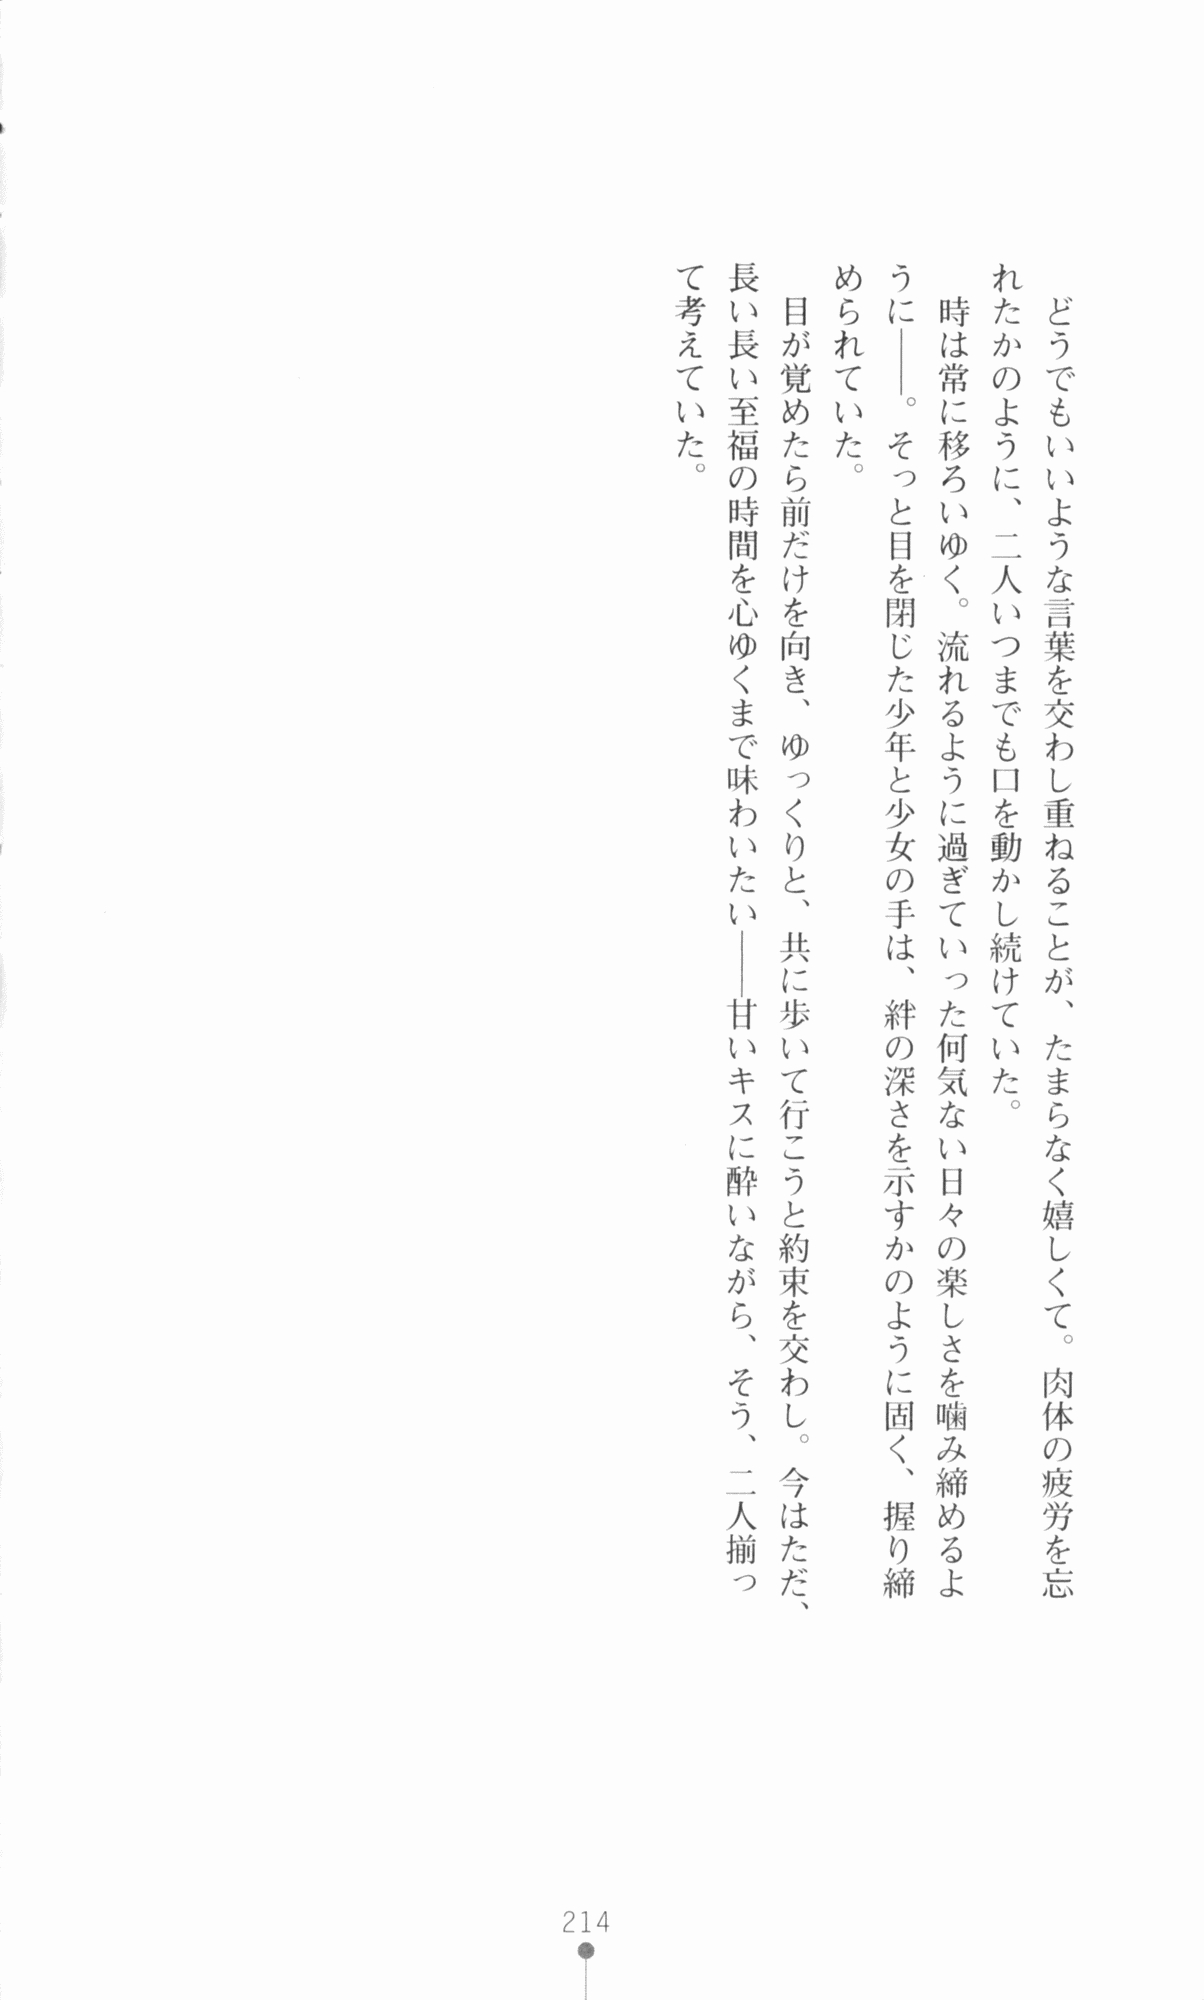 [Utsusemi × Yoshi Hyuma, Komori Kei] Princess Lover! Sylvia van Hossen no Koiji 2 (Original by Ricotta) 237